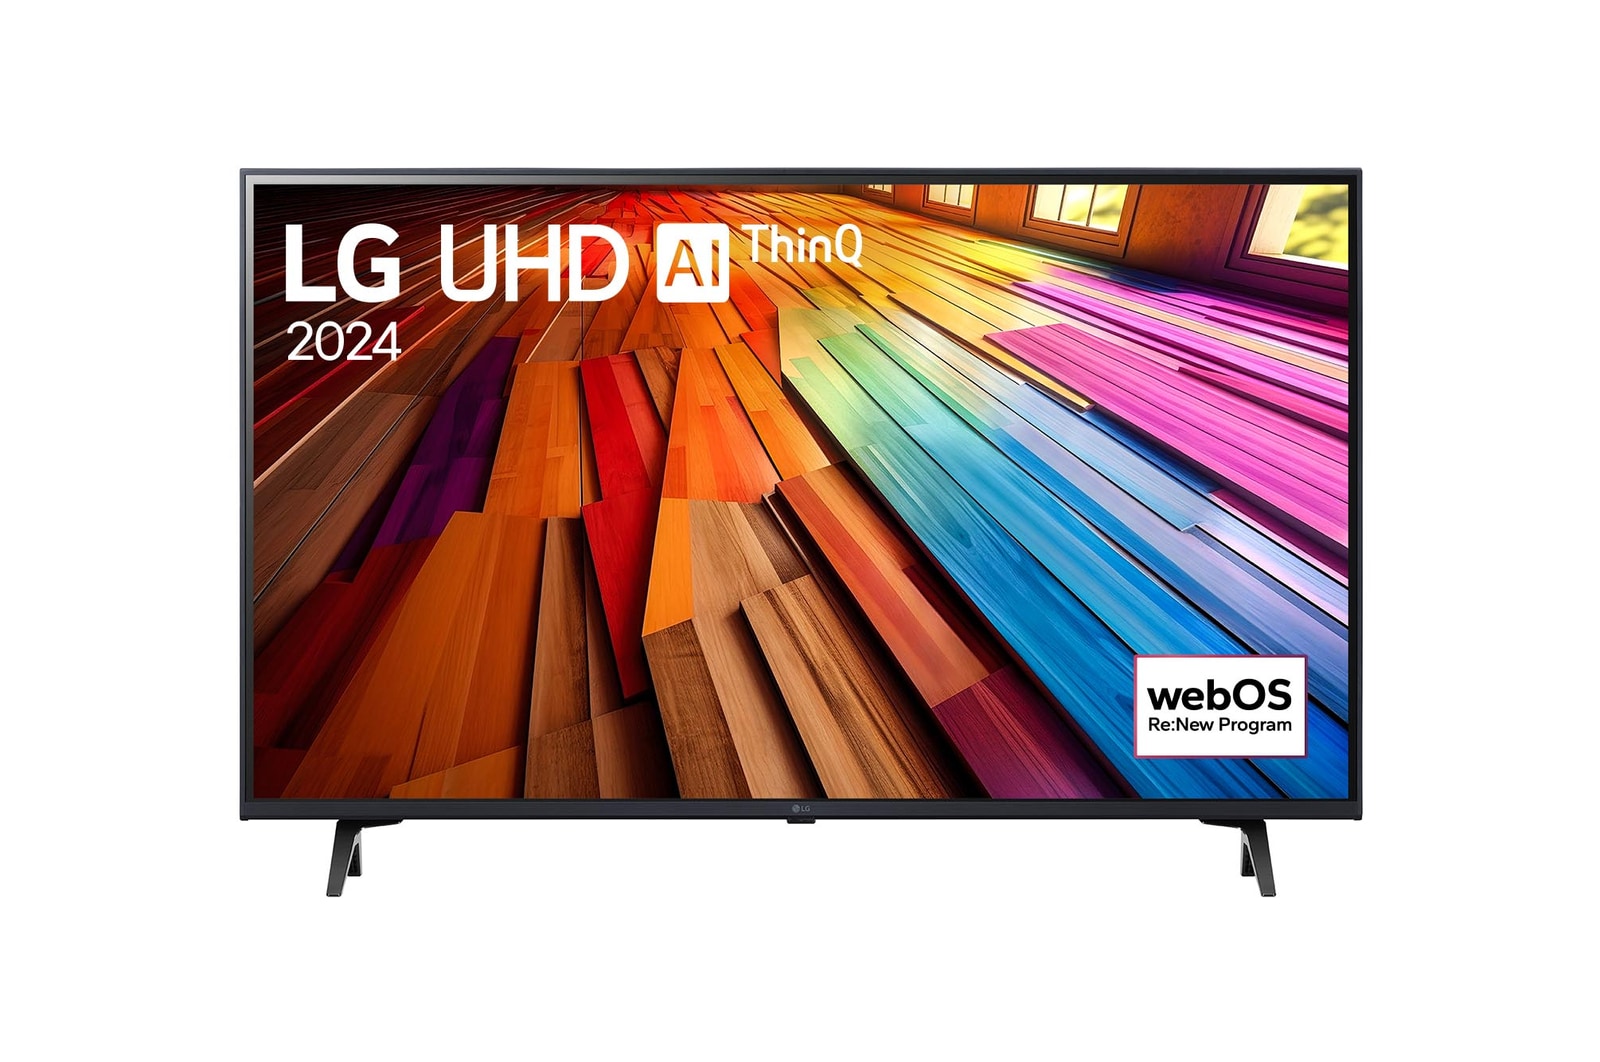 Vista frontal da LG UHD TV, UT80 com texto da LG UHD AI ThinQ, 2024 e o logótipo do webOS Re:New Program no ecrã